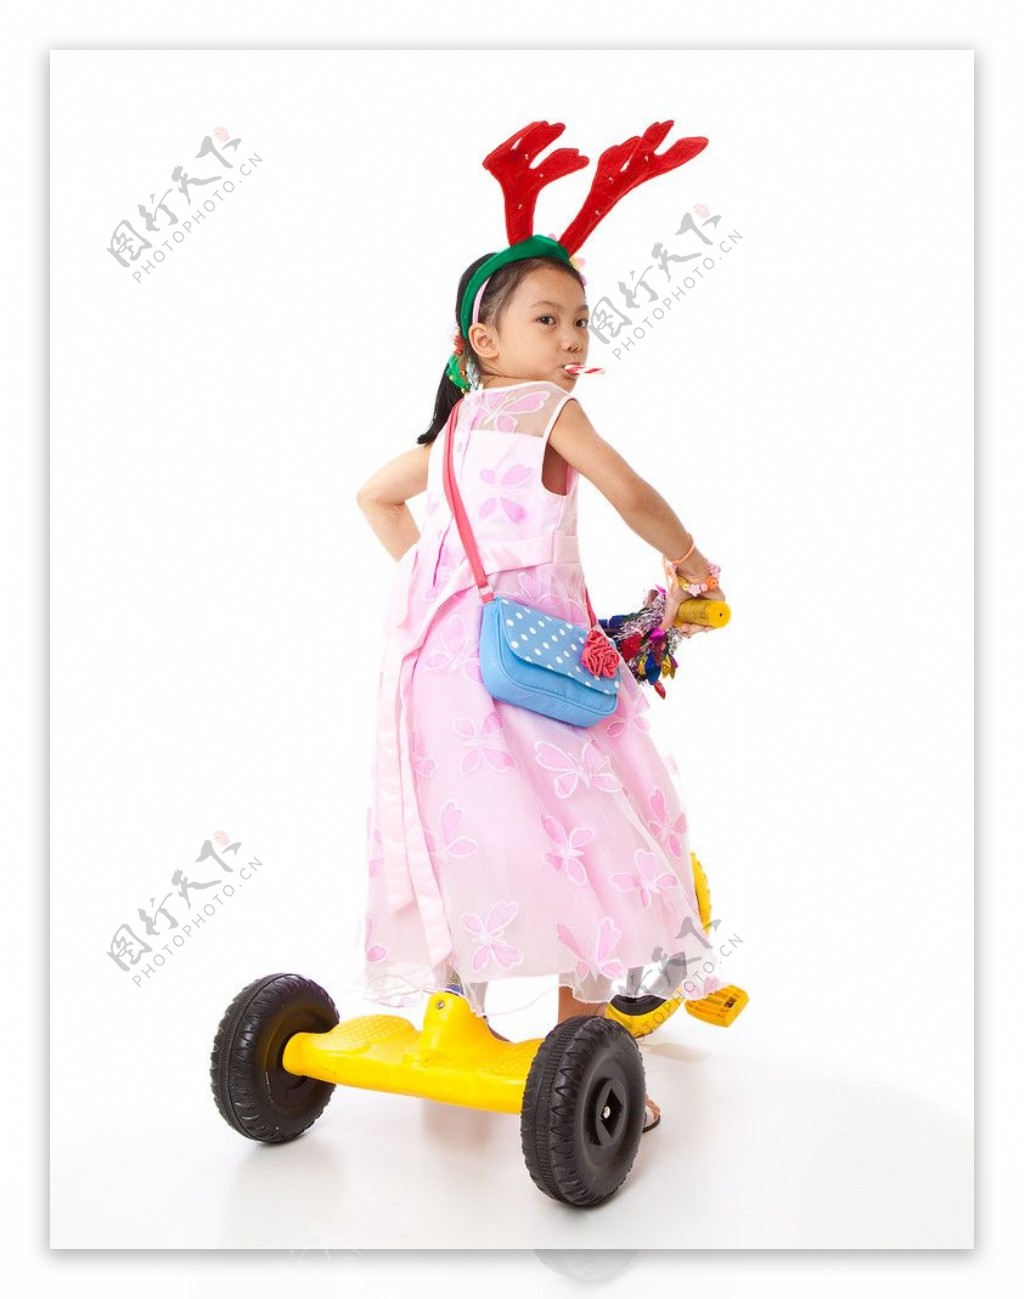 骑儿童车的小女孩图片